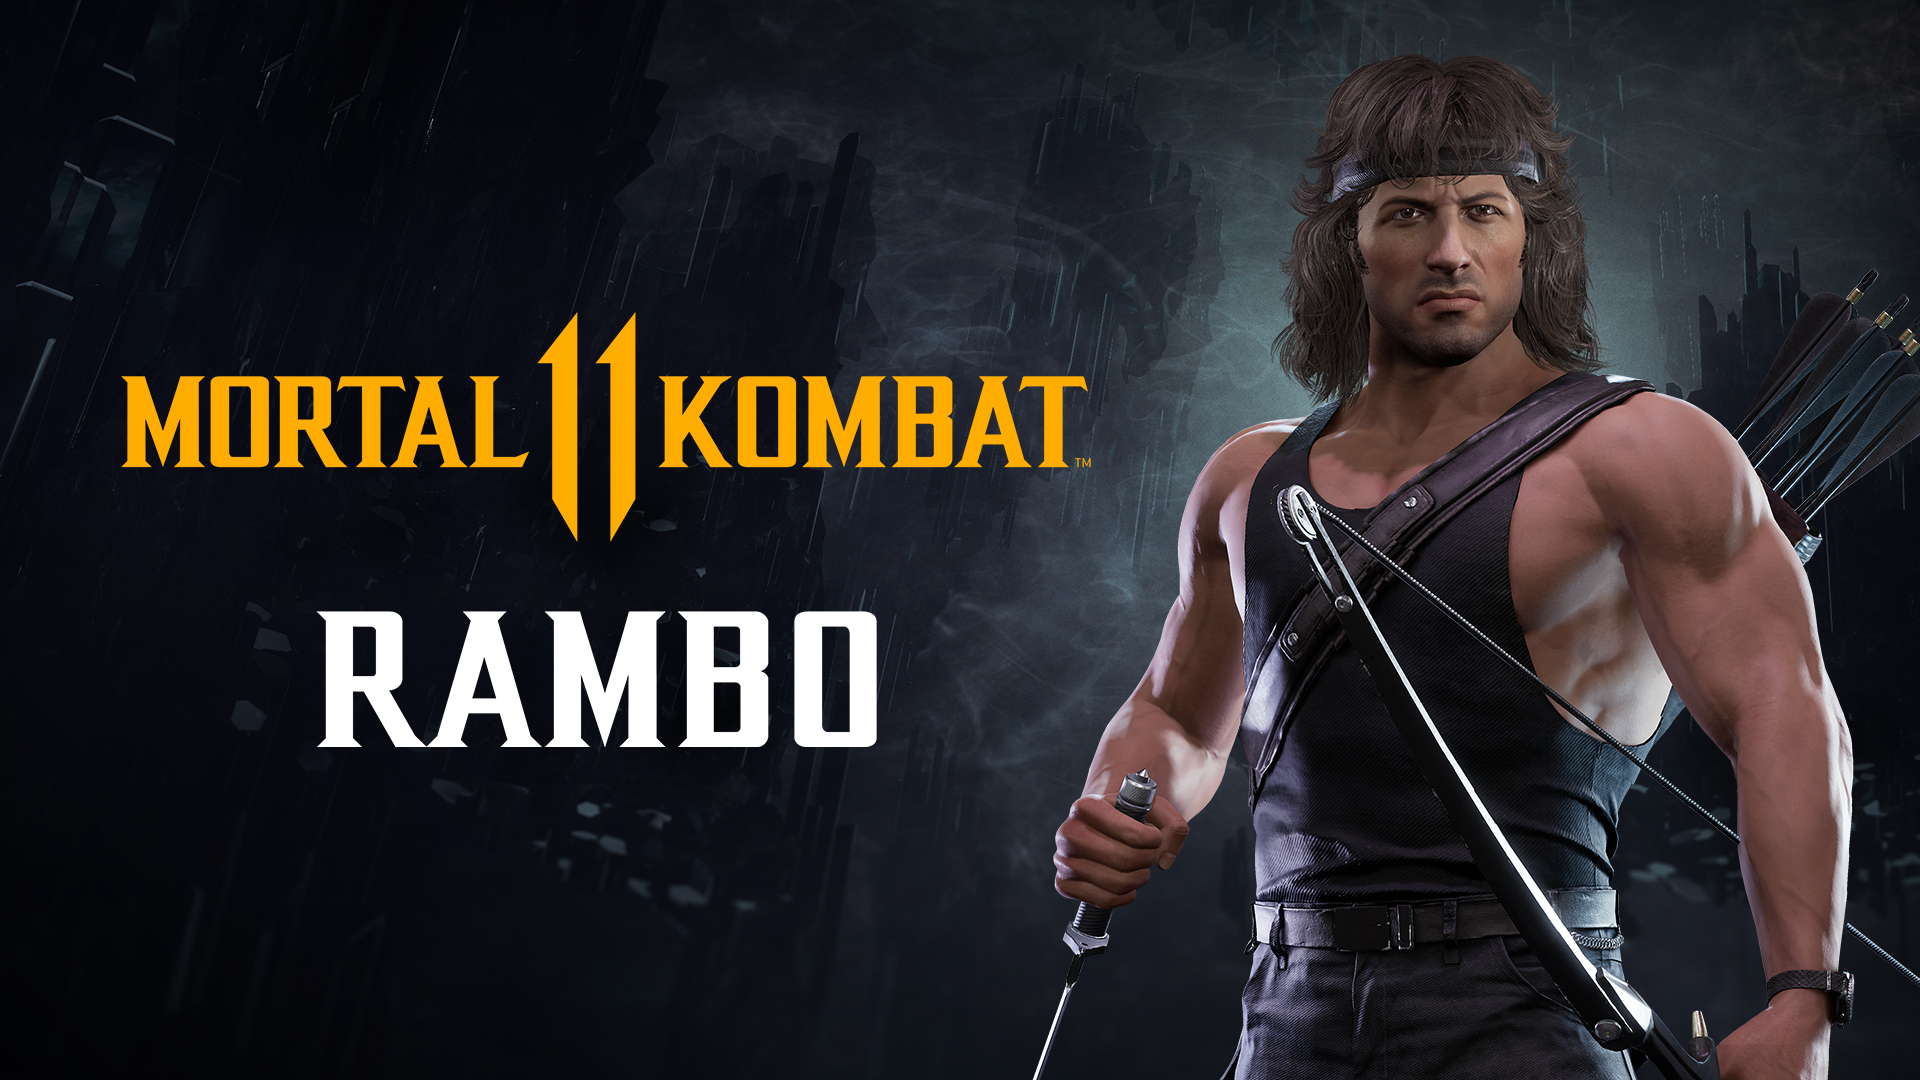 Rambo Se Une A La Pelea En El Nuevo Trailer De Gameplay De Mortal Kombat 11 Ultimate Que Incluye